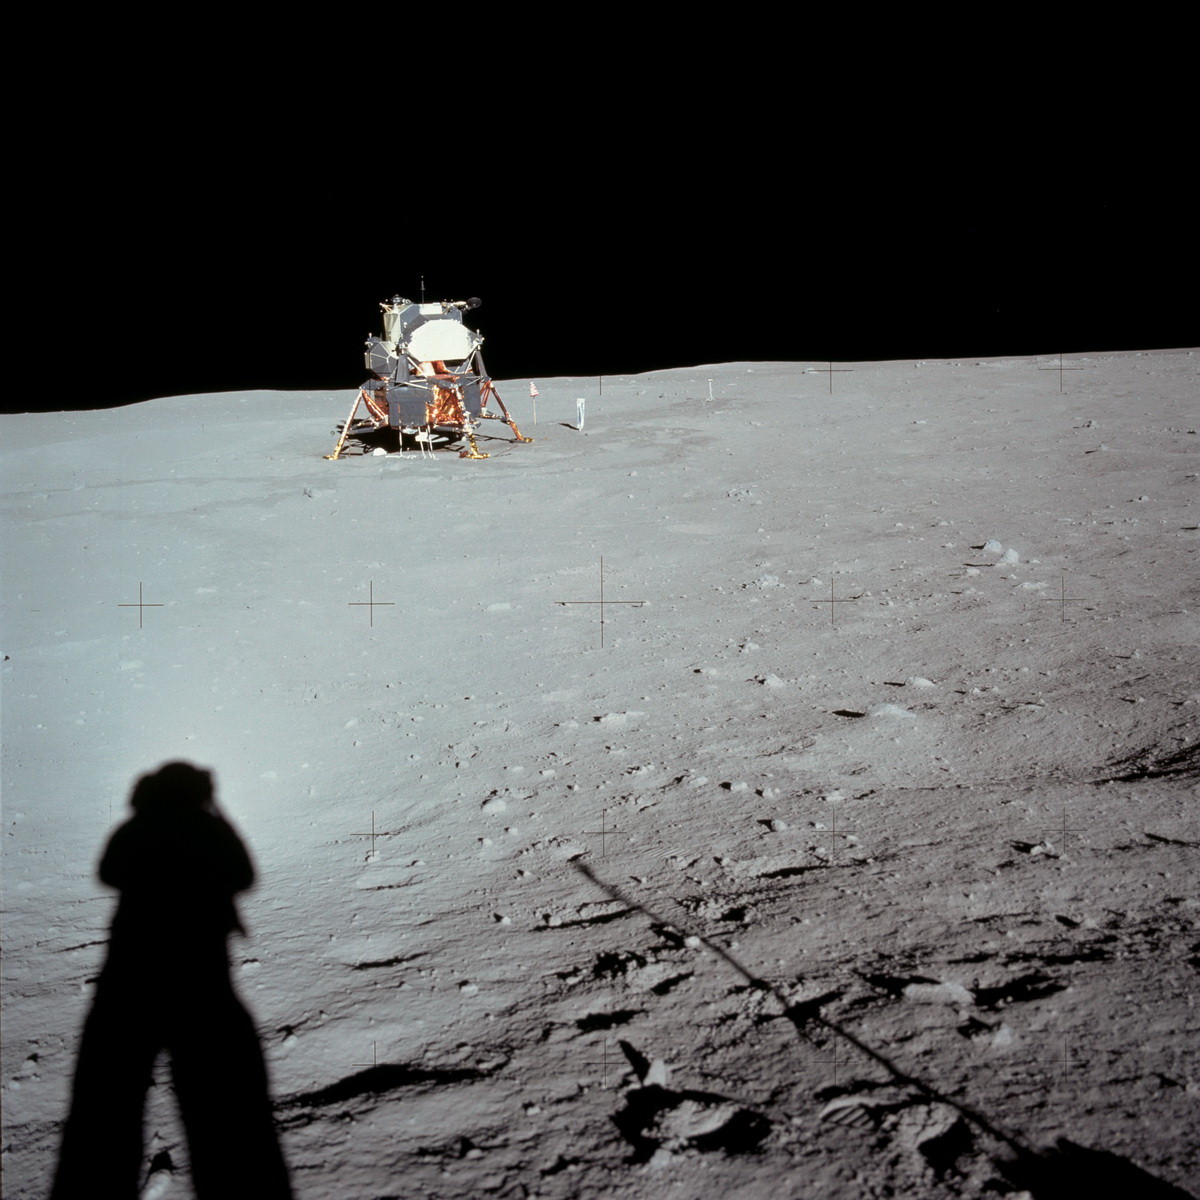 Армстронг фотографирует лунный модуль от кратера Литл Уэст